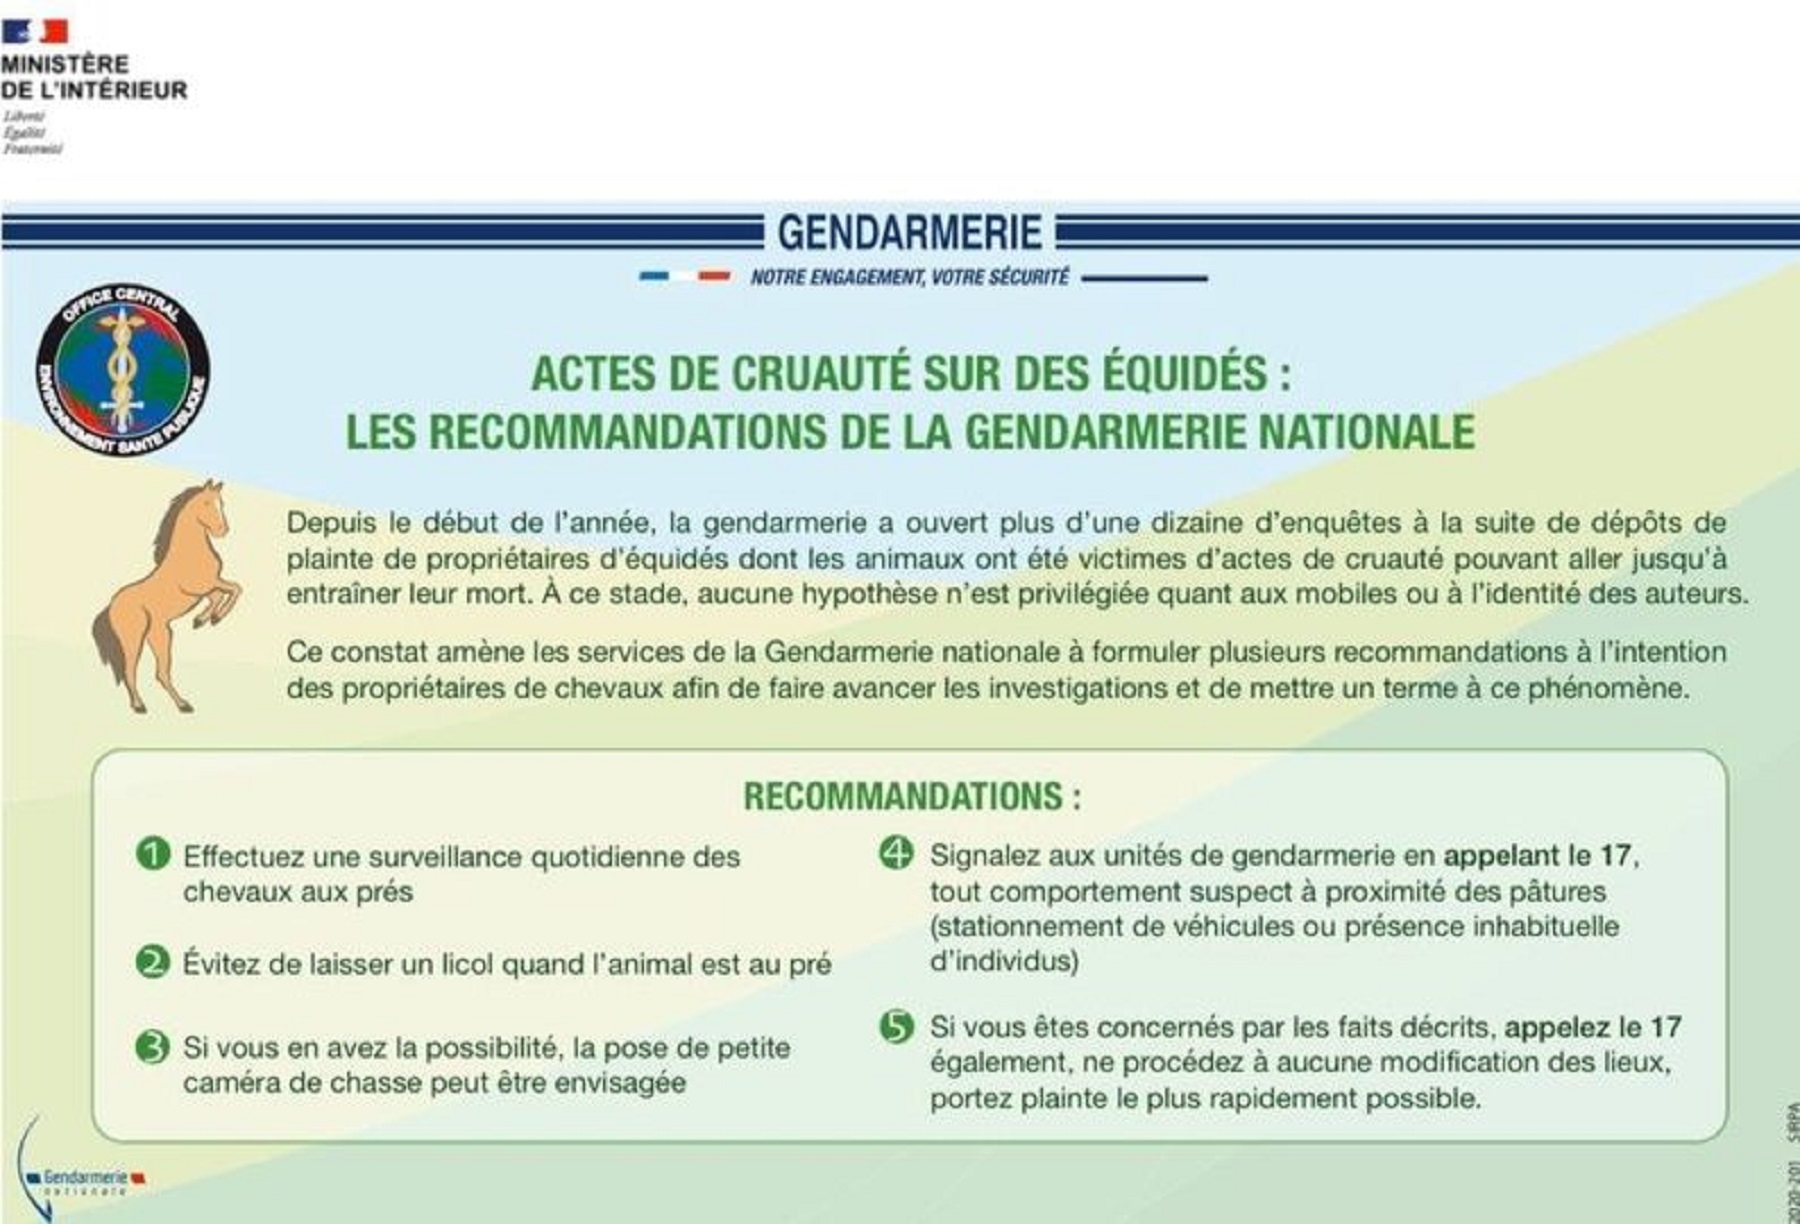 La gendarmerie diffuse ces recommandations à l'intention des propriétaires de chevaux.